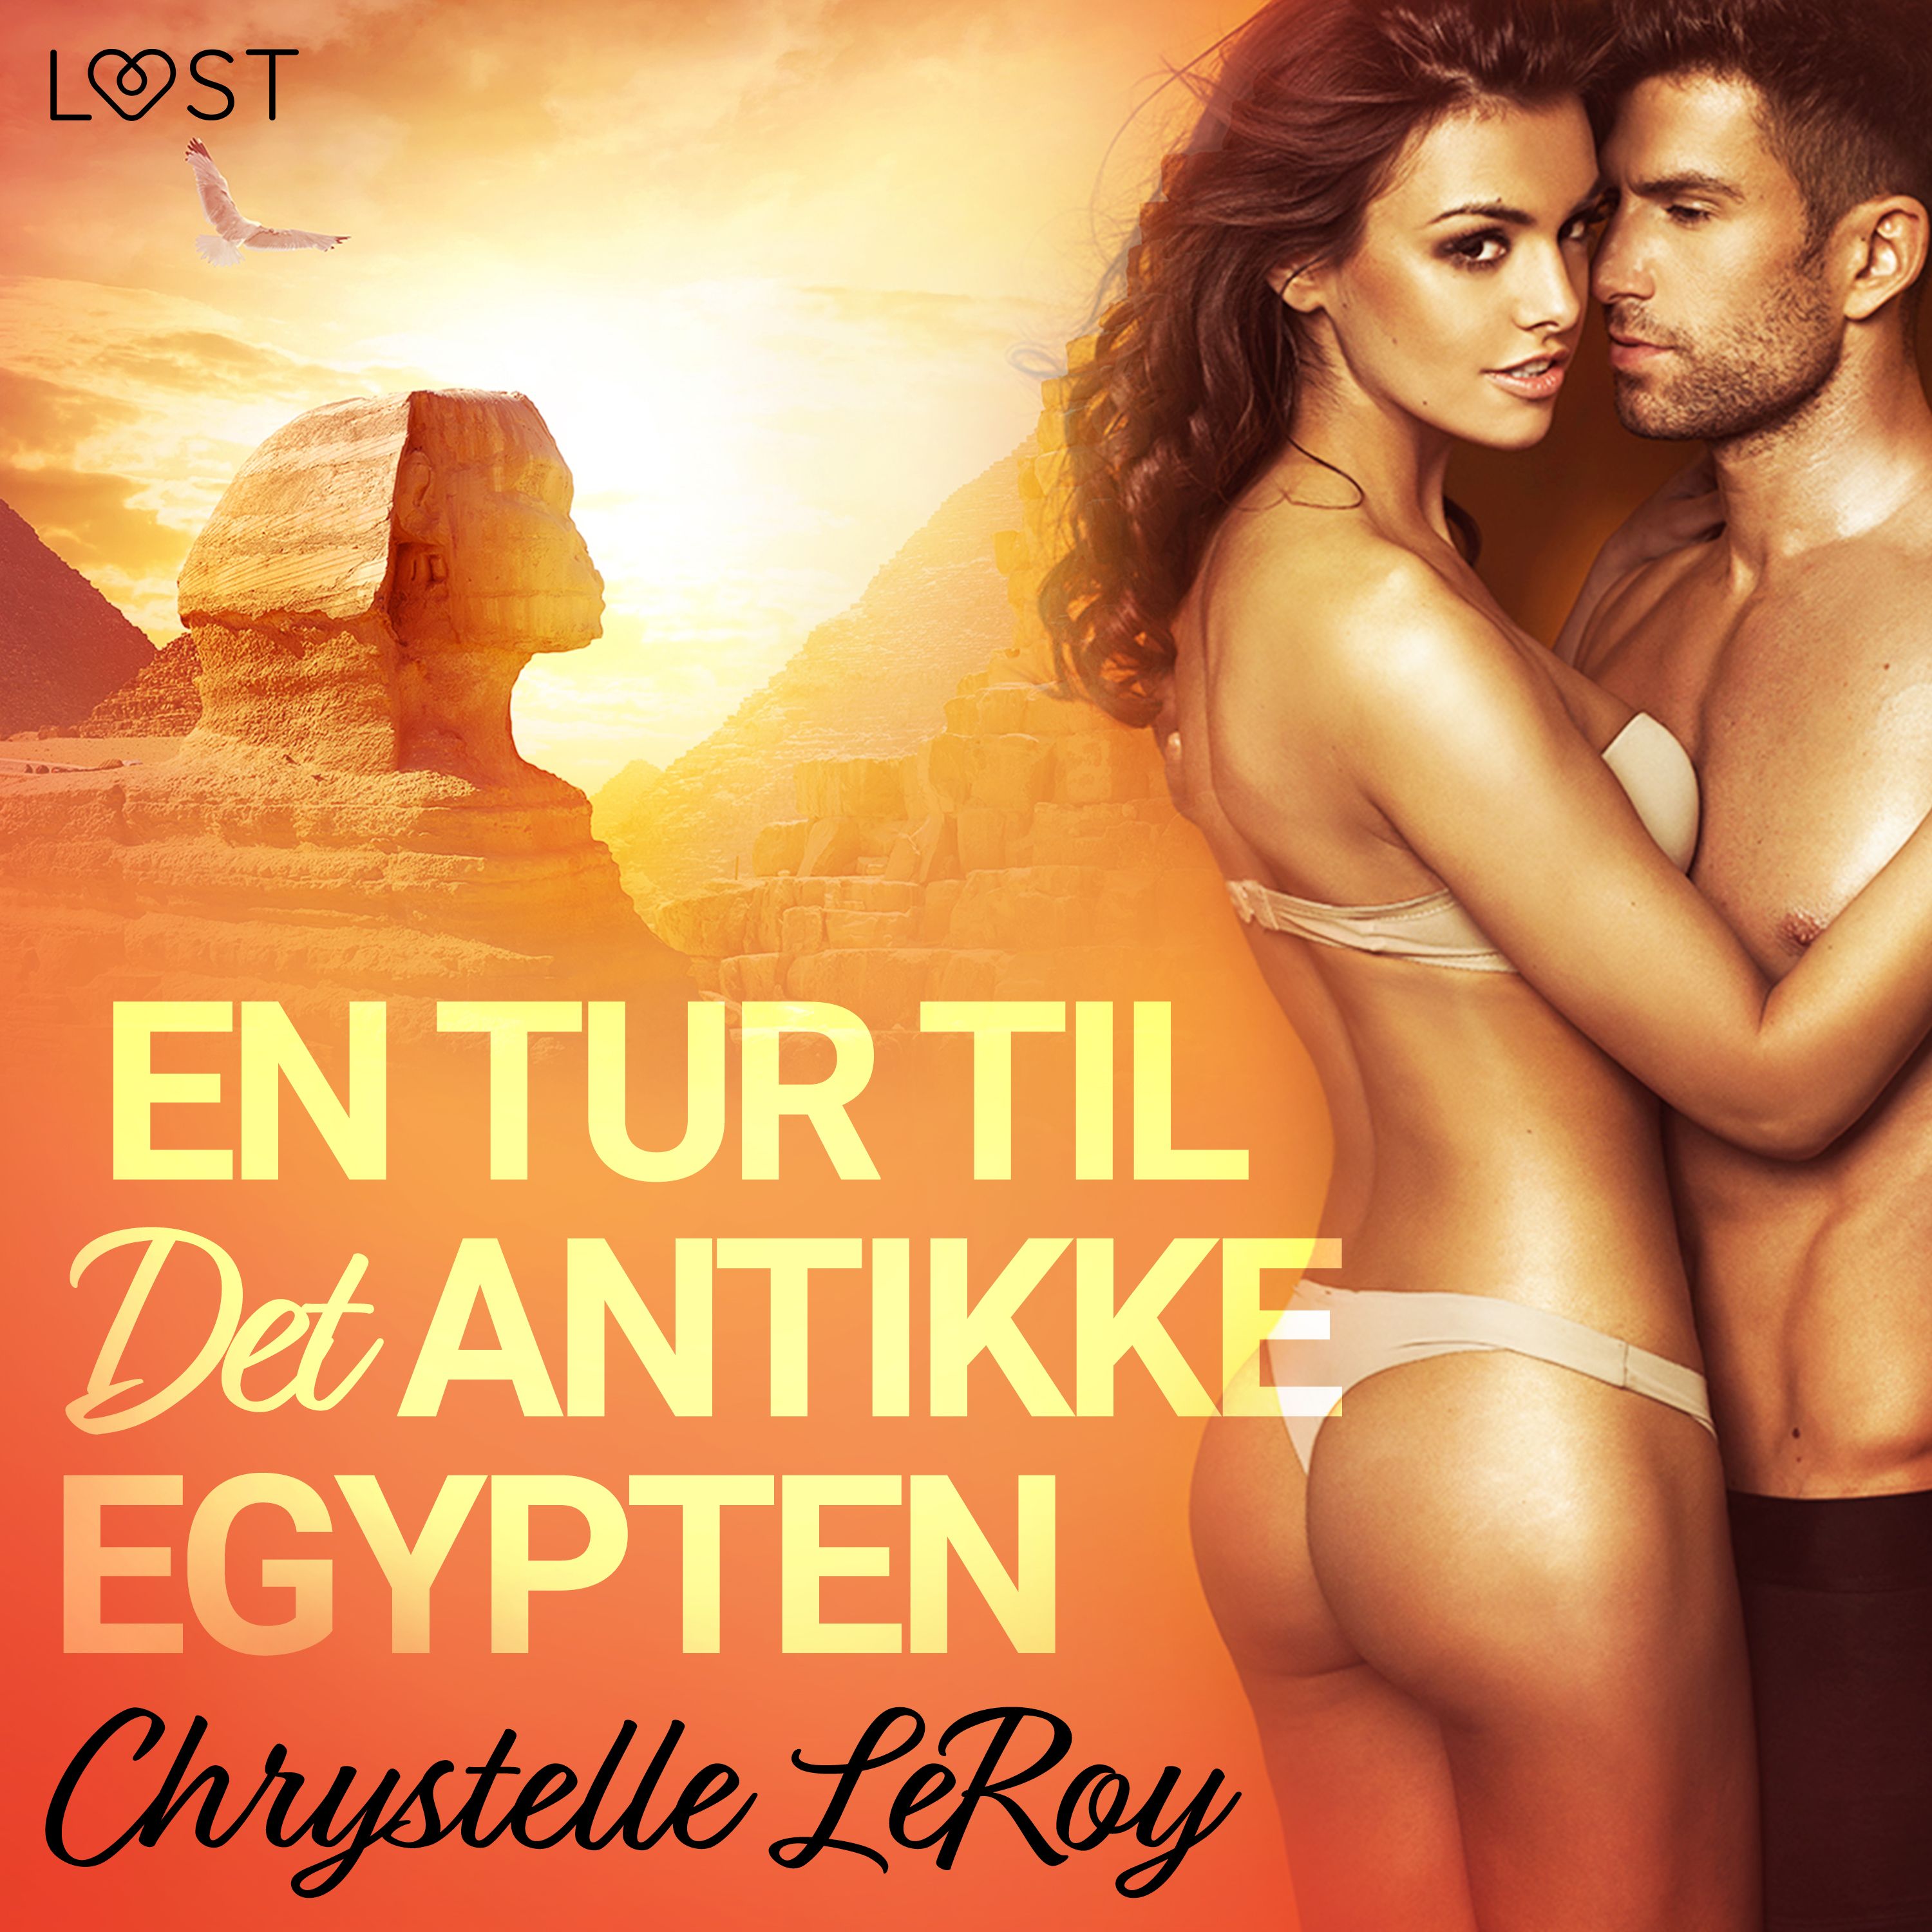 En Tur til Det Antikke Egypten - erotisk novelle, lydbog af Chrystelle LeRoy